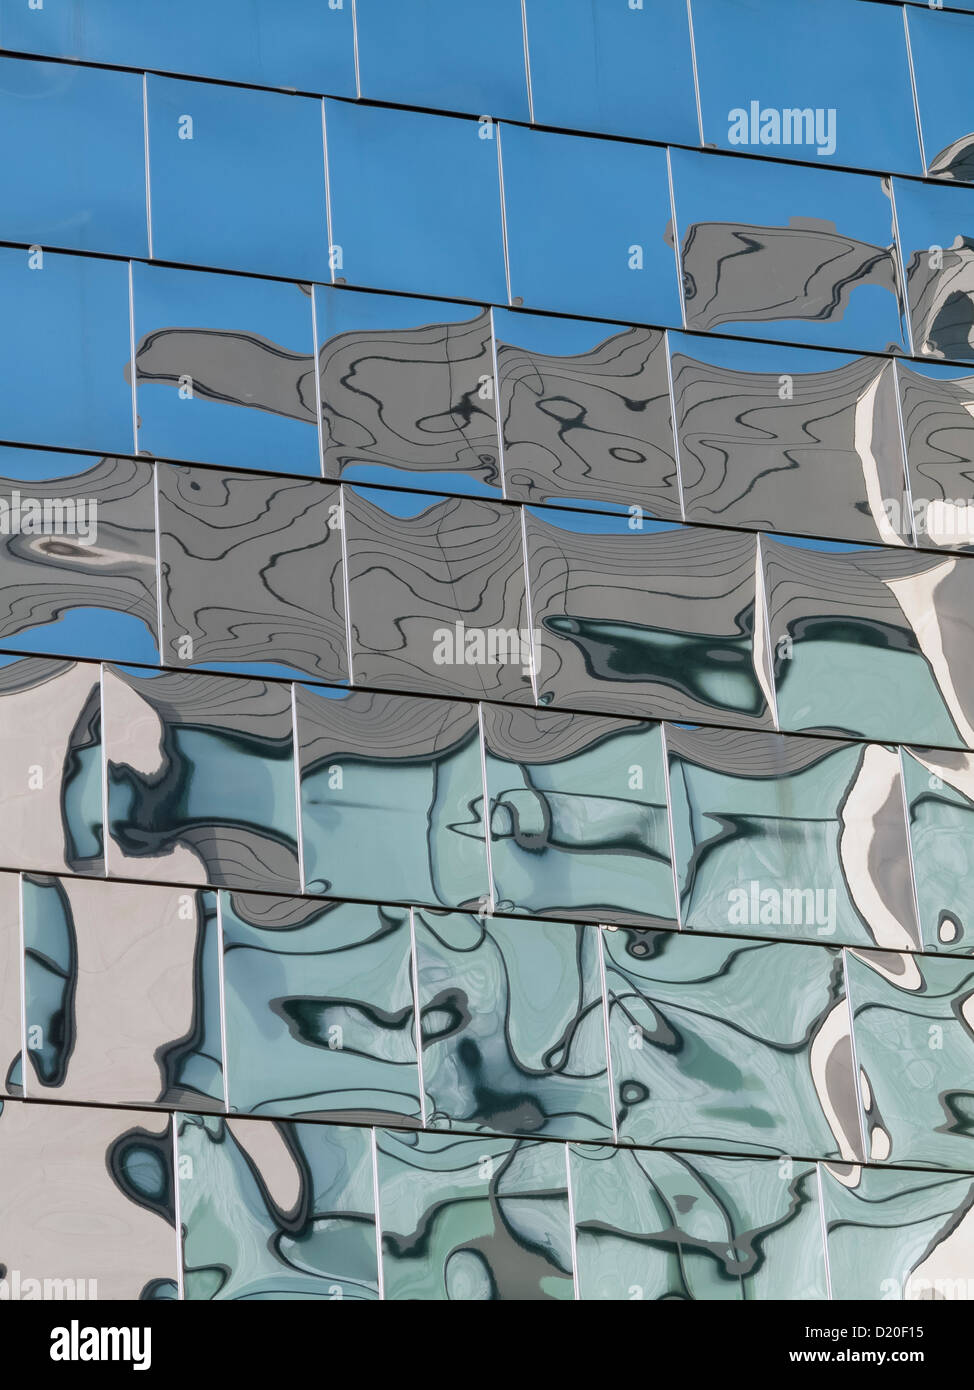 Abstraktere Überlegungen in poliertem Edelstahl Verkleidung auf das Vorzeigekino gefliest Highcross Leicester, UK Stockfoto